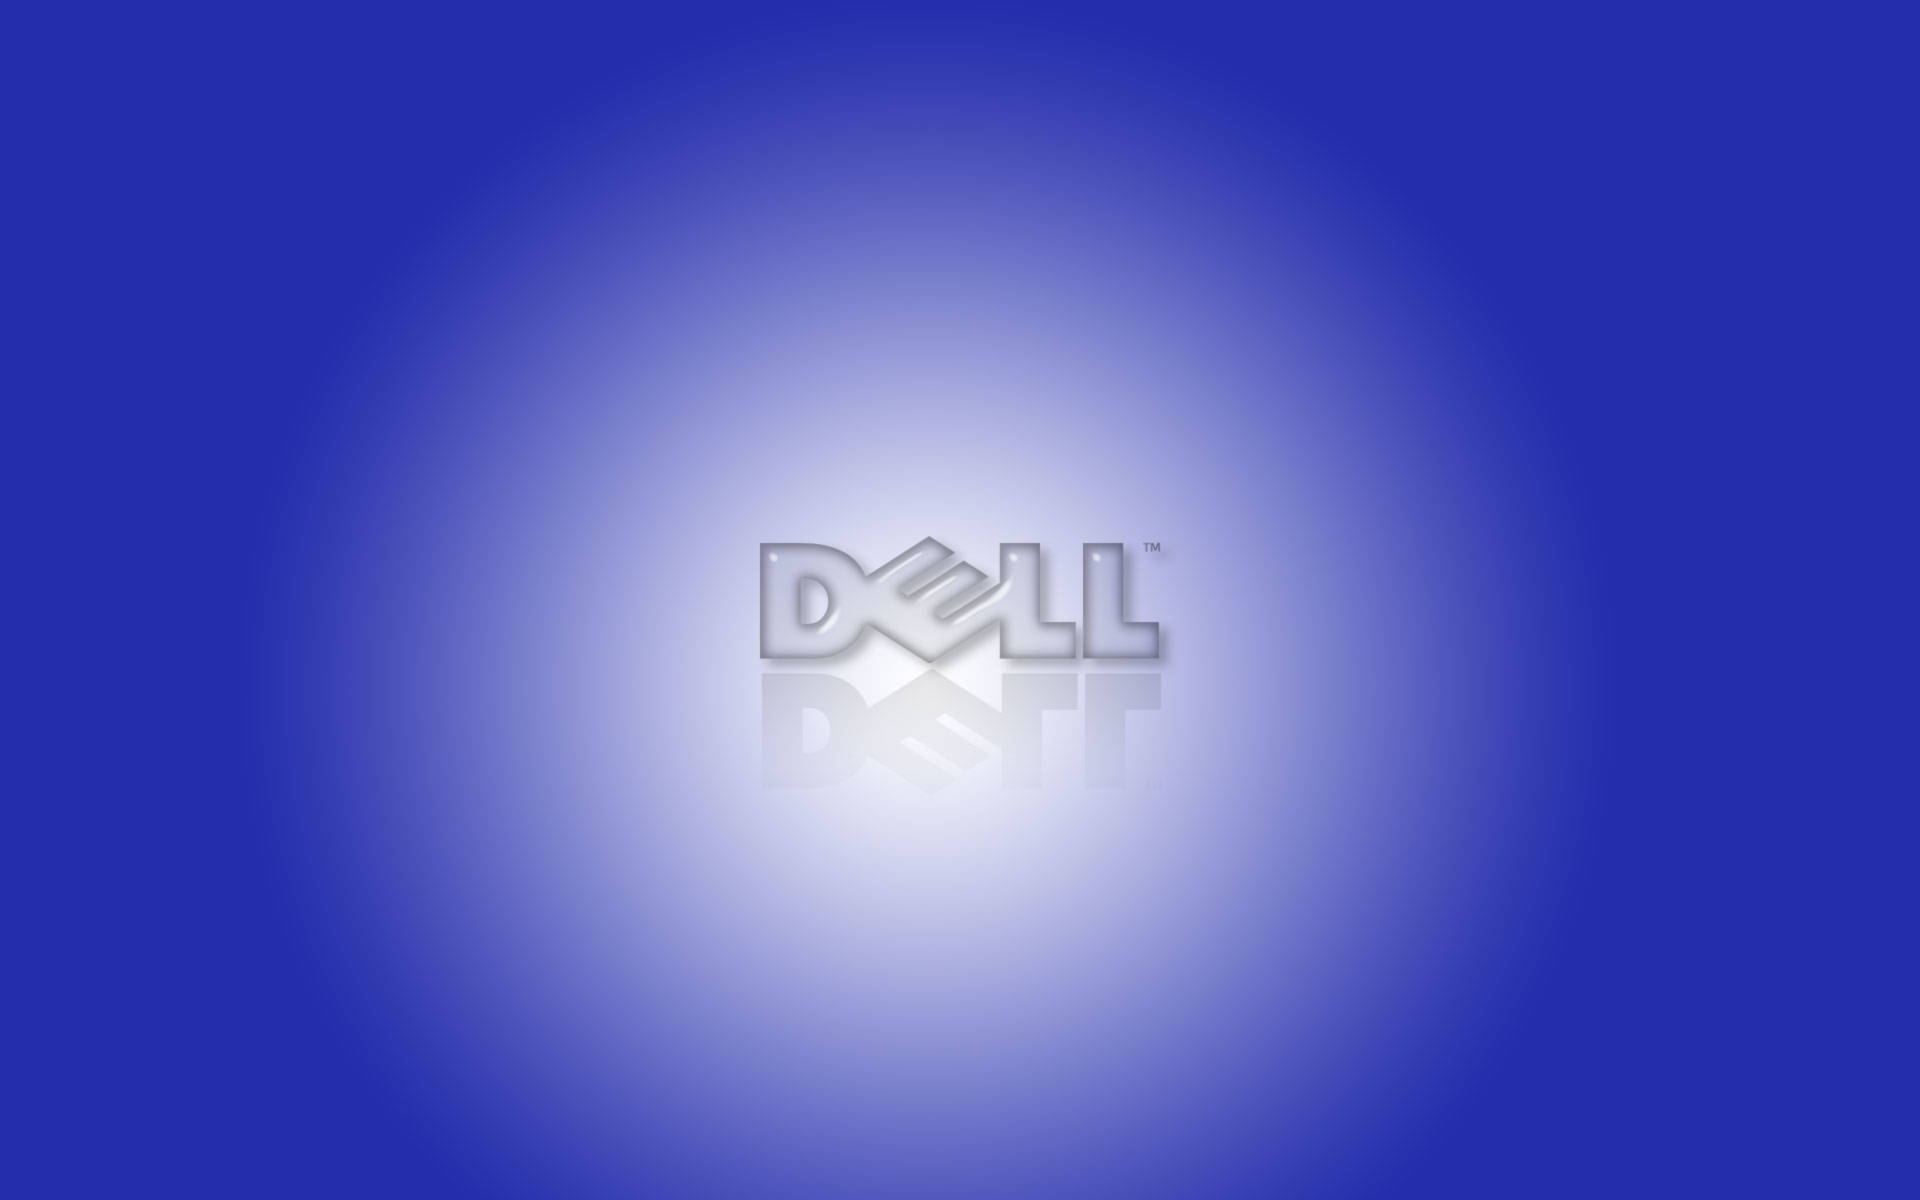 Spotlighted Dell 4k Logo Wallpaper